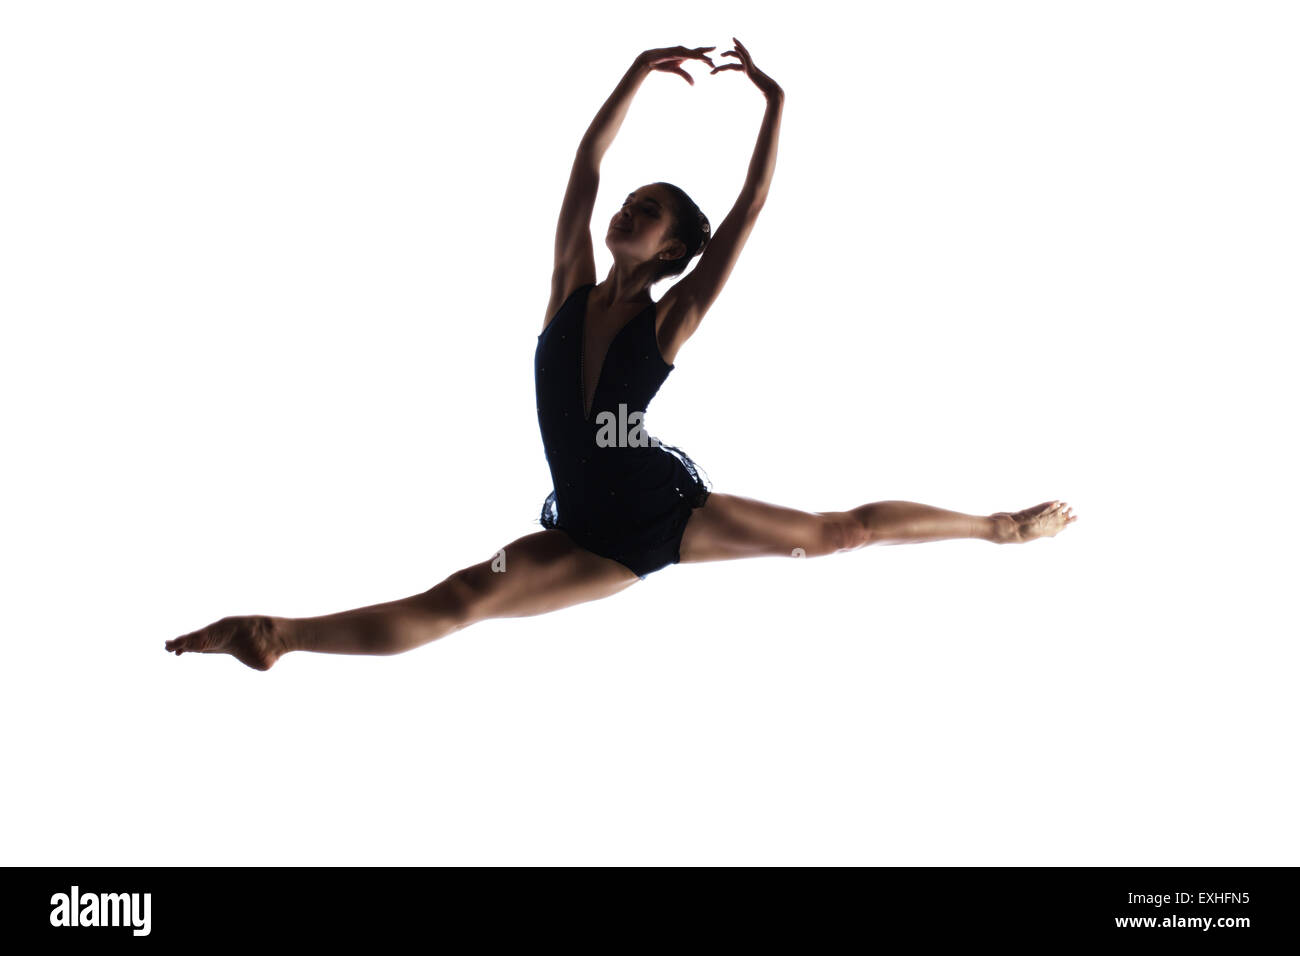 Silhouette di una bellissima femmina ballerina isolato su uno sfondo bianco. La ballerina è a piedi nudi e con indosso un body scuro Foto Stock